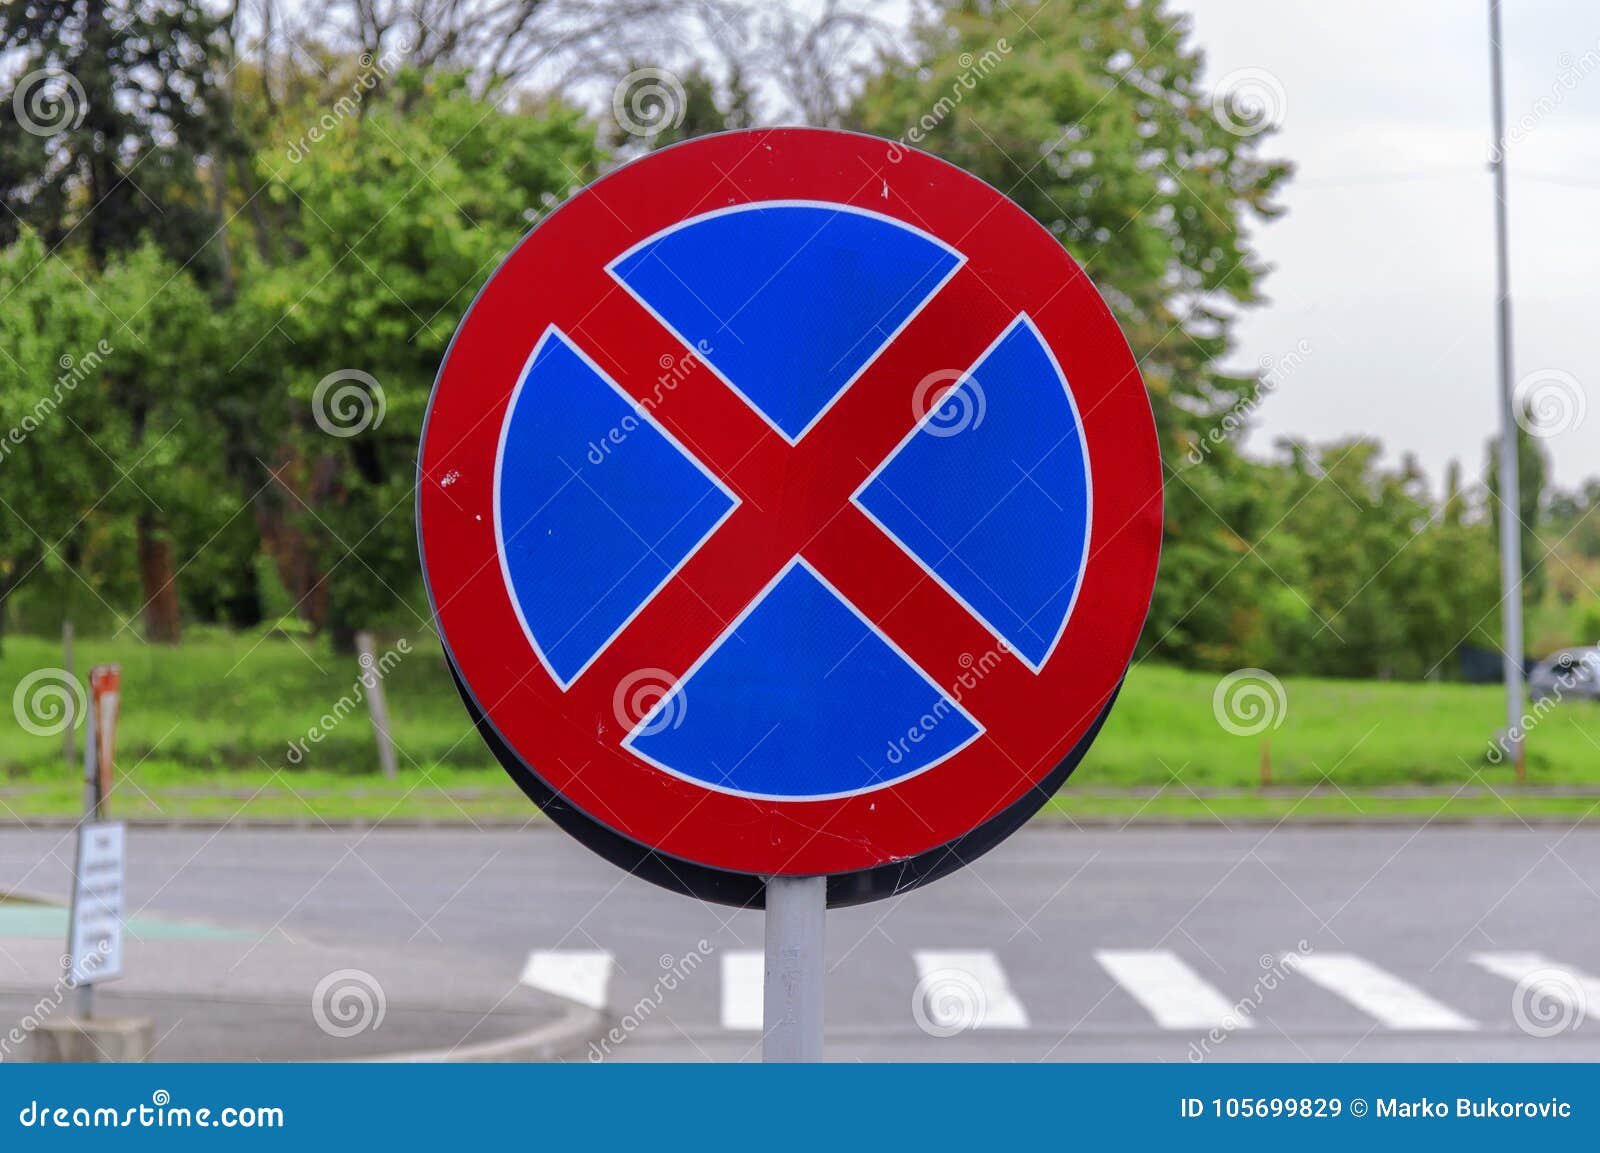 Traffic sign: Hệ thống biển báo giao thông sẽ giúp bạn an toàn hơn khi tham gia giao thông, hãy cùng xem hình ảnh các biển báo để nắm rõ các quy tắc, hạn chế và cách xử lý khi gặp phải chúng.